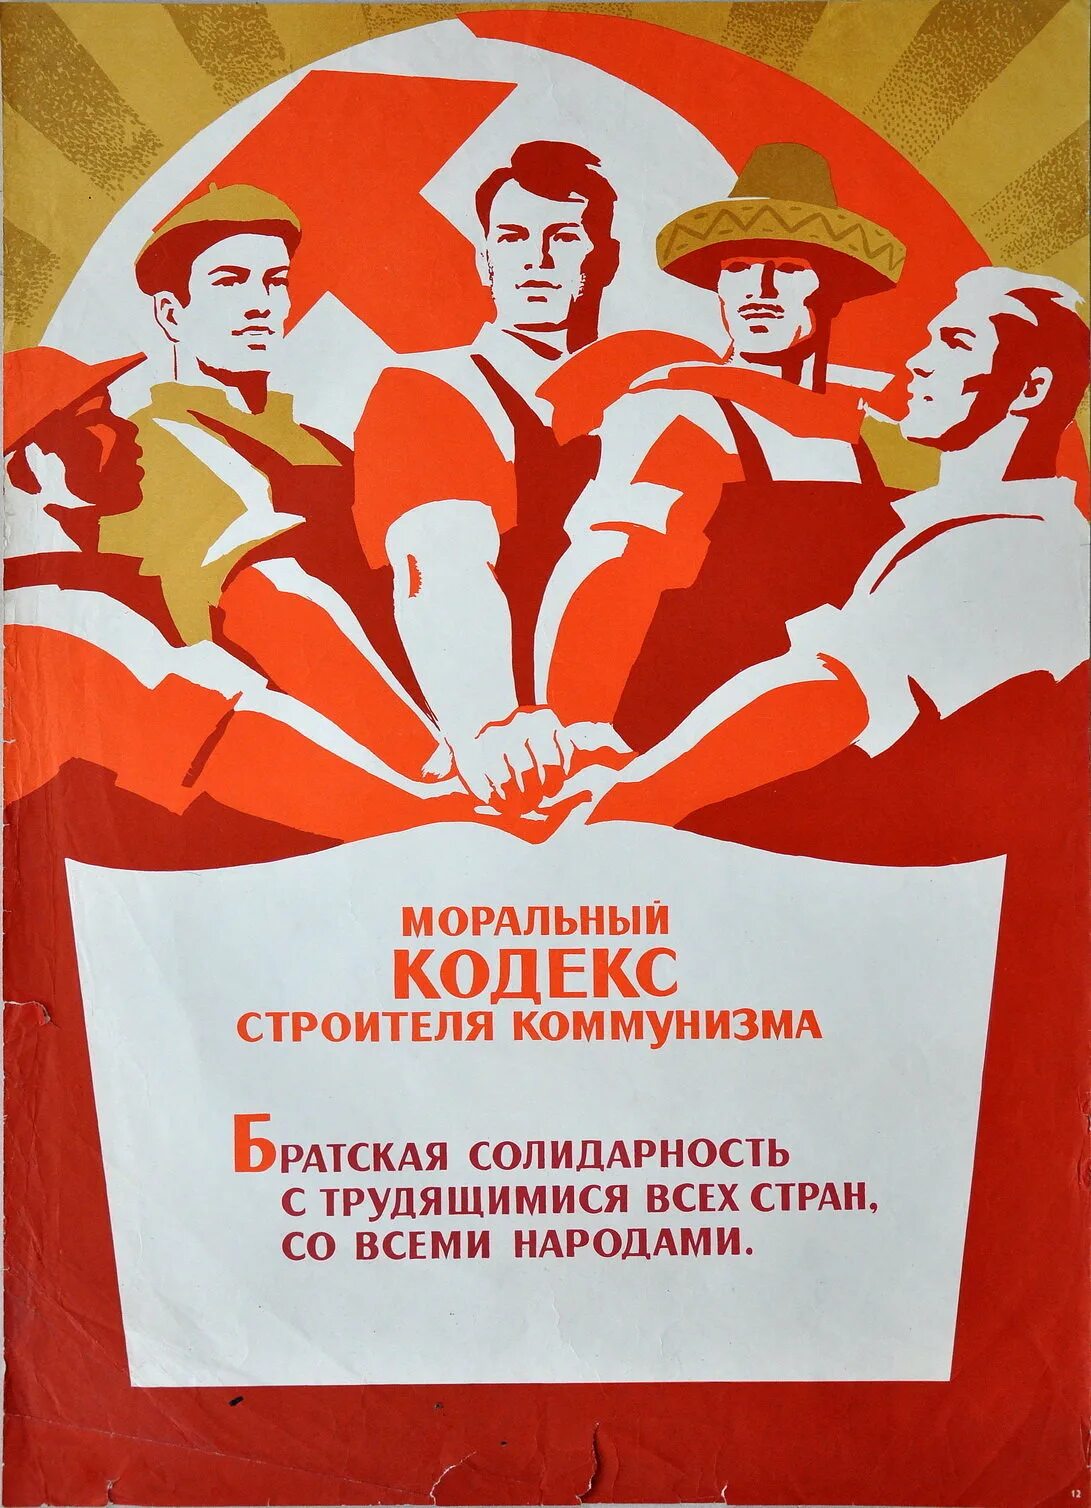 Трудящиеся всех стран. Моральный кодекс строителя коммунизма плакат. Кодекс строителя коммунизма. Плакаты коммунистов. Лозунг Строителей коммунизма.